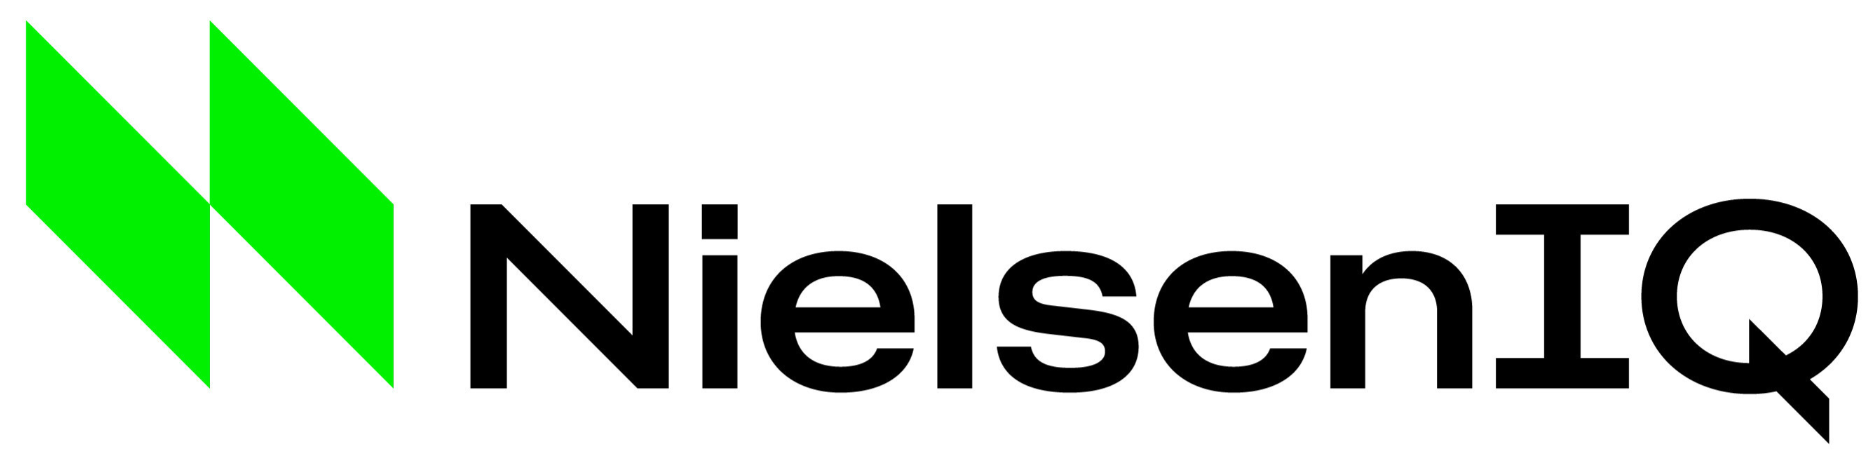 Nielsen - 